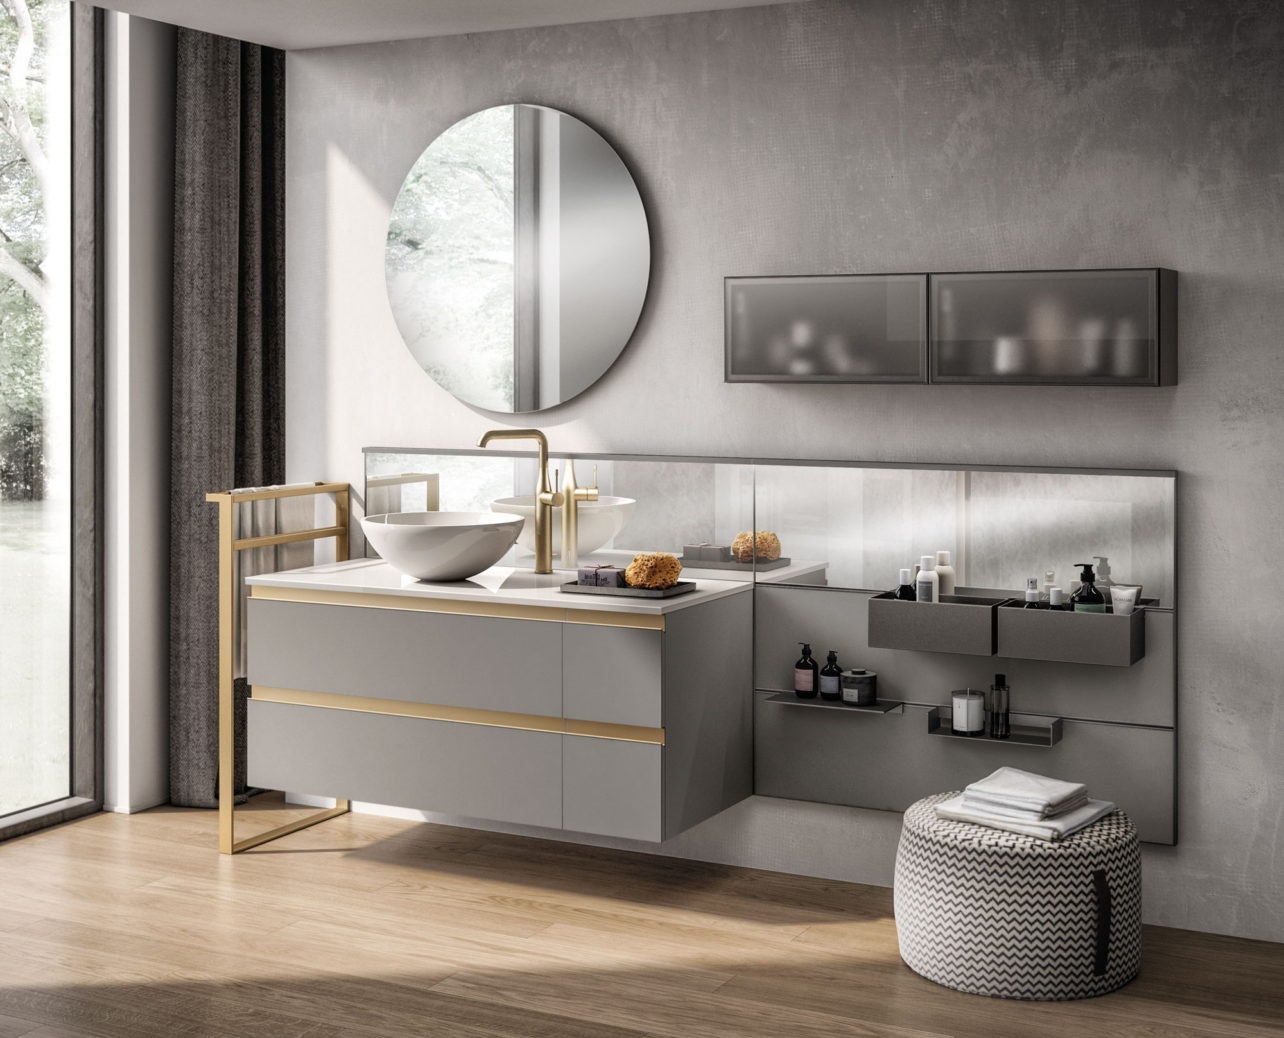 Мебель для ванной из коллекции Tratto от Scavolini дизайн Vuesse. Навесная тумба выполнена в лакированной отделке “Серый...